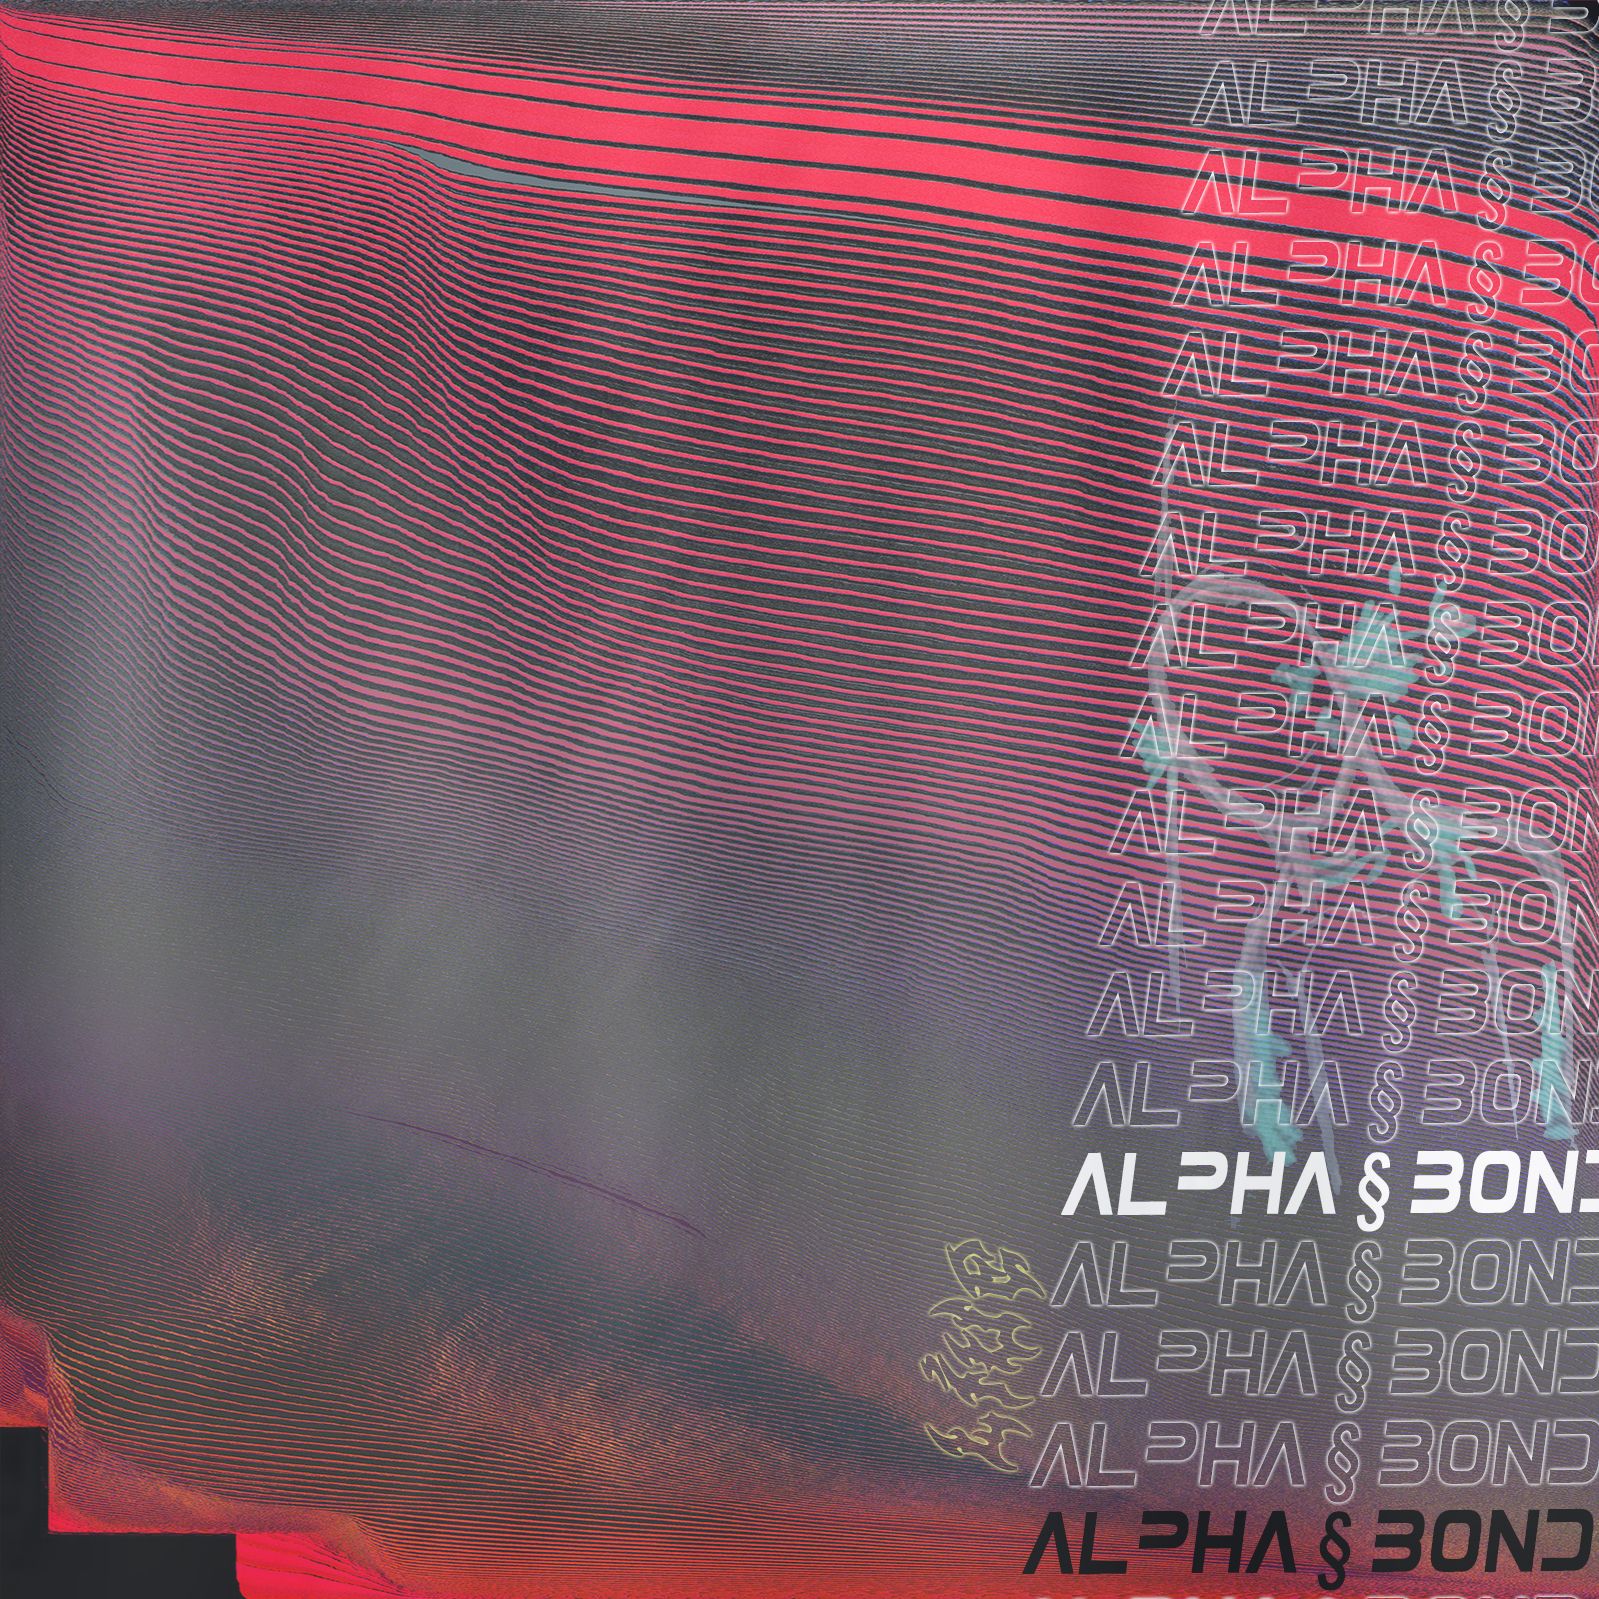 Skinuti alpha § bond